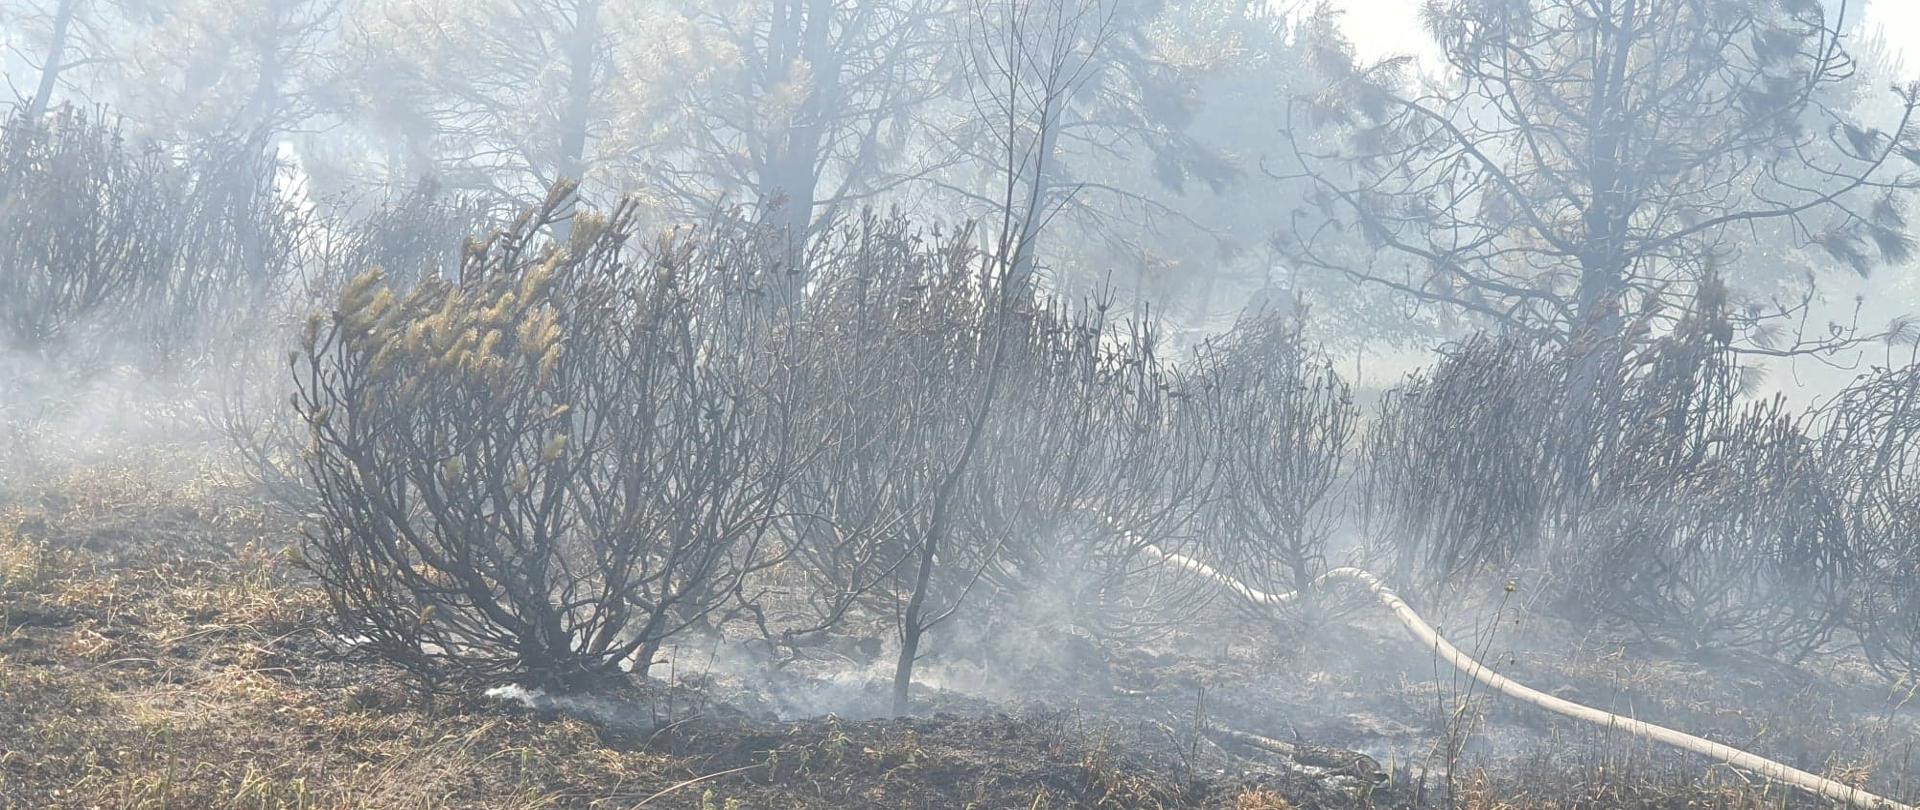 Widać spalone krzewy, jest dym